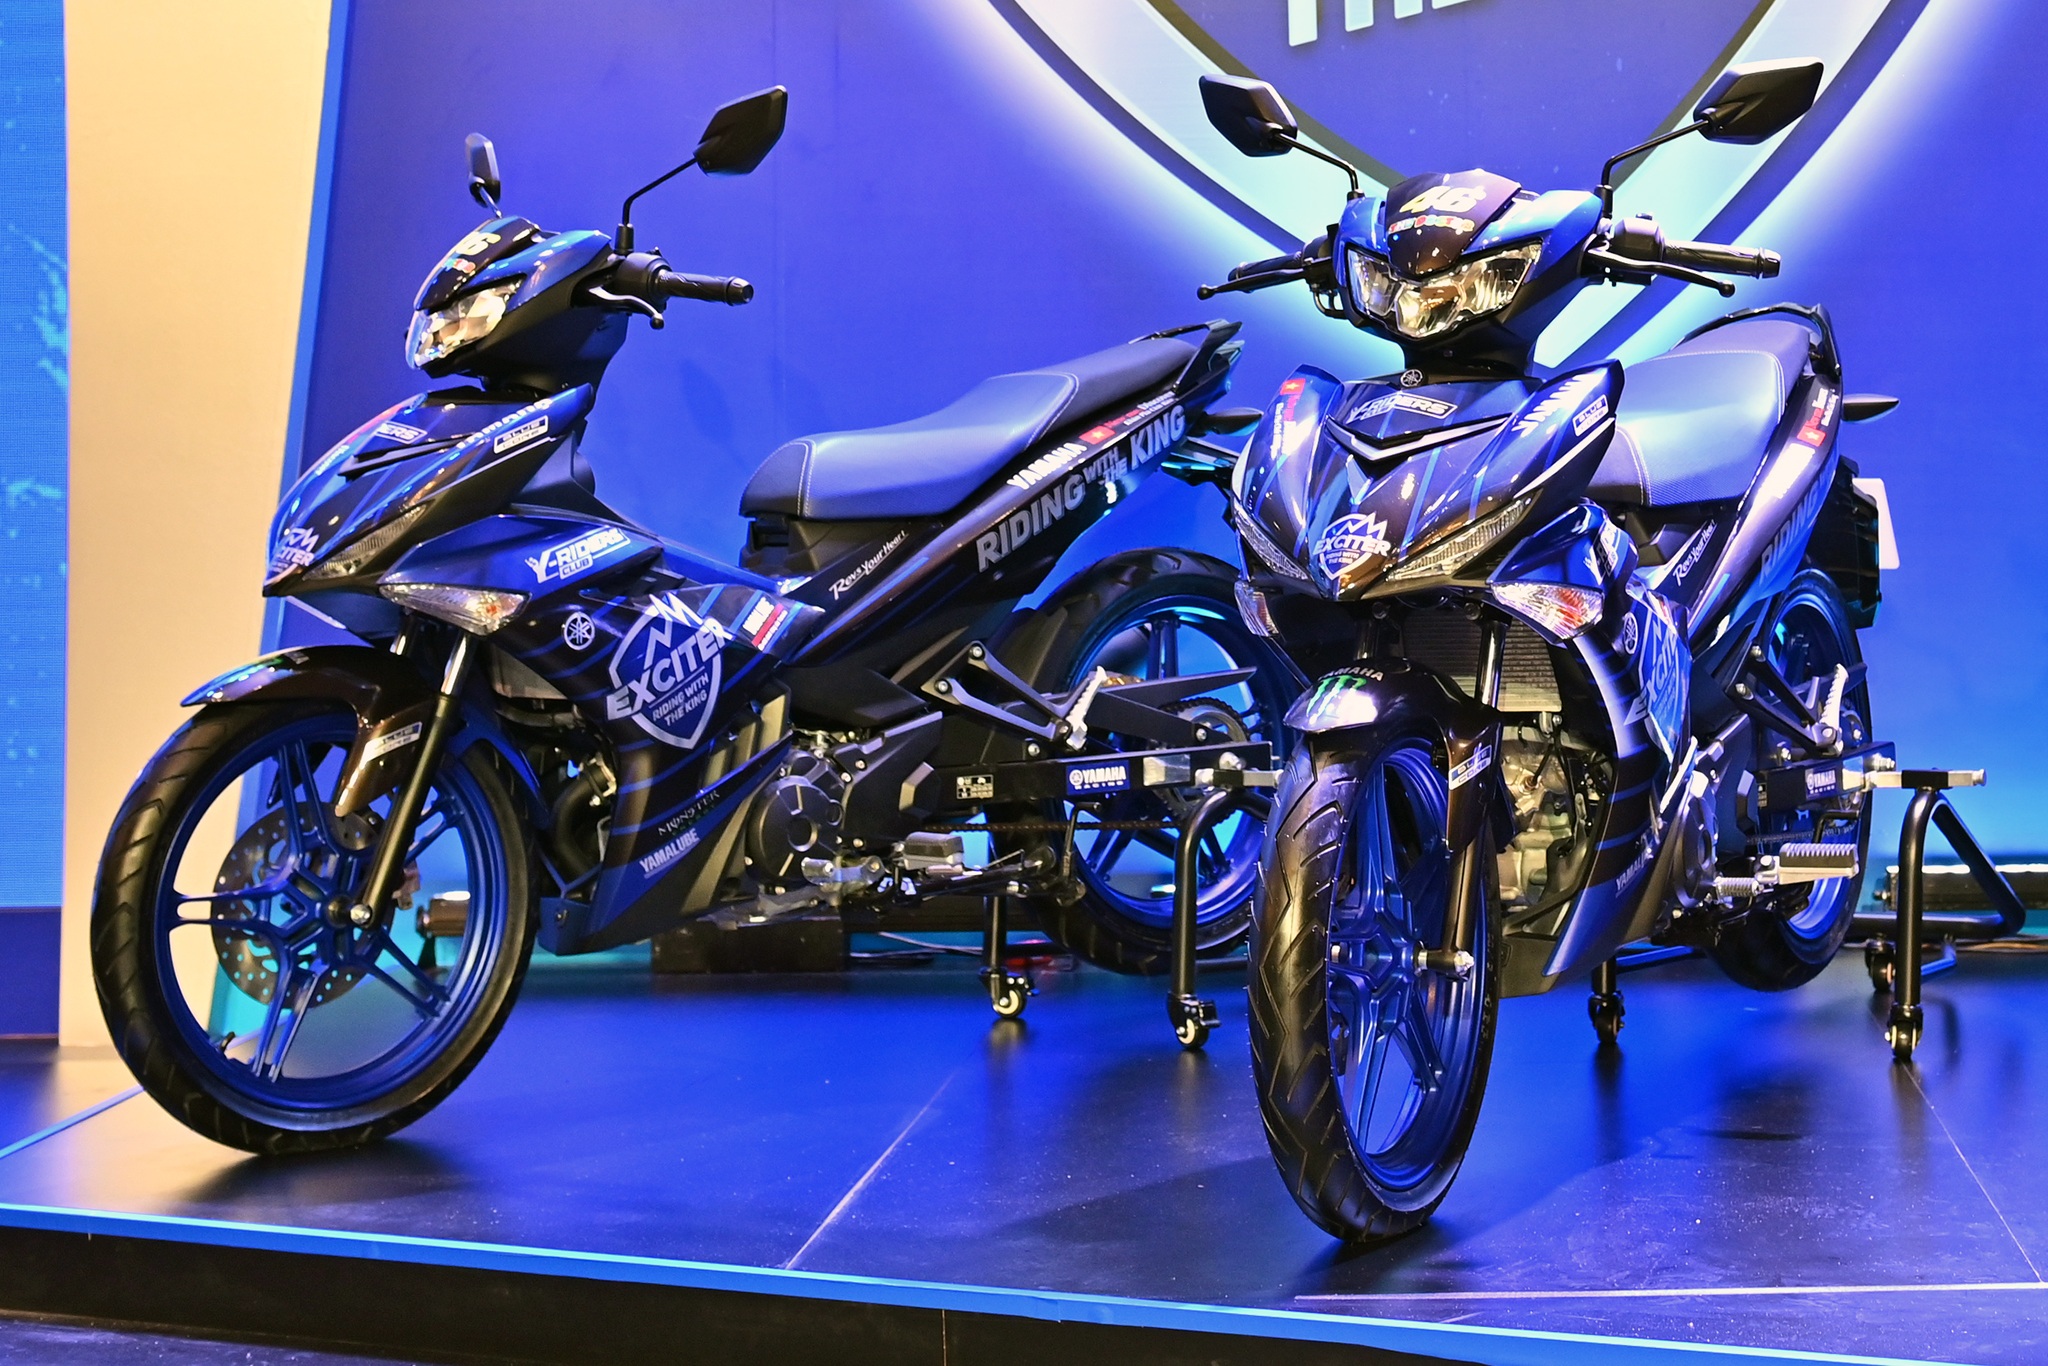 Yamaha xác nhận không có mẫu Exciter 155 phiên bản 2020 | Báo Dân trí